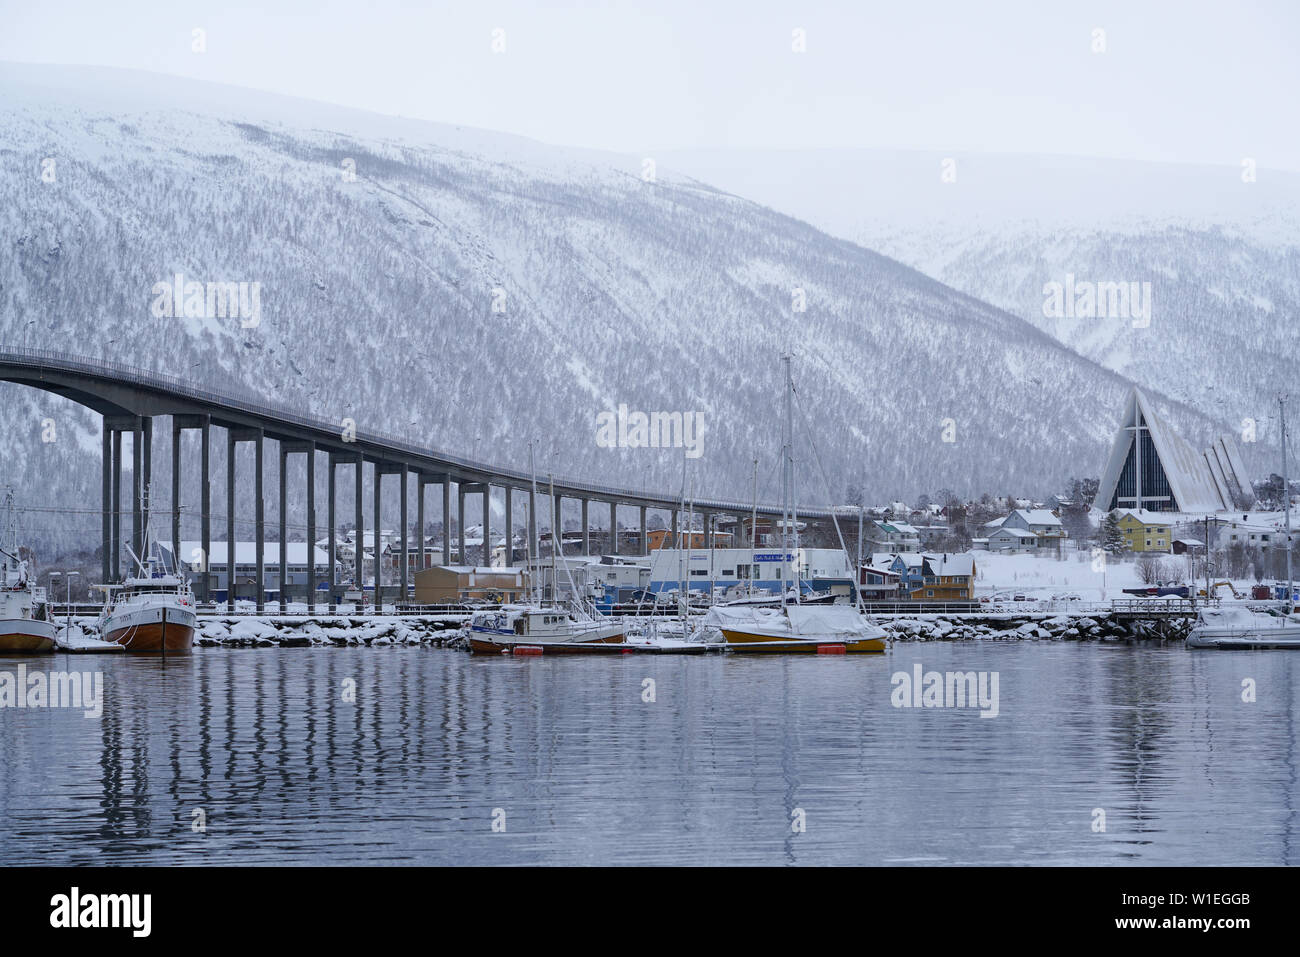 Port de Tromso, l'Bruvegen Bridge et Tromsdalen (église cathédrale arctique), Tromso, comté de Troms, Norvège, Scandinavie, Europe Banque D'Images